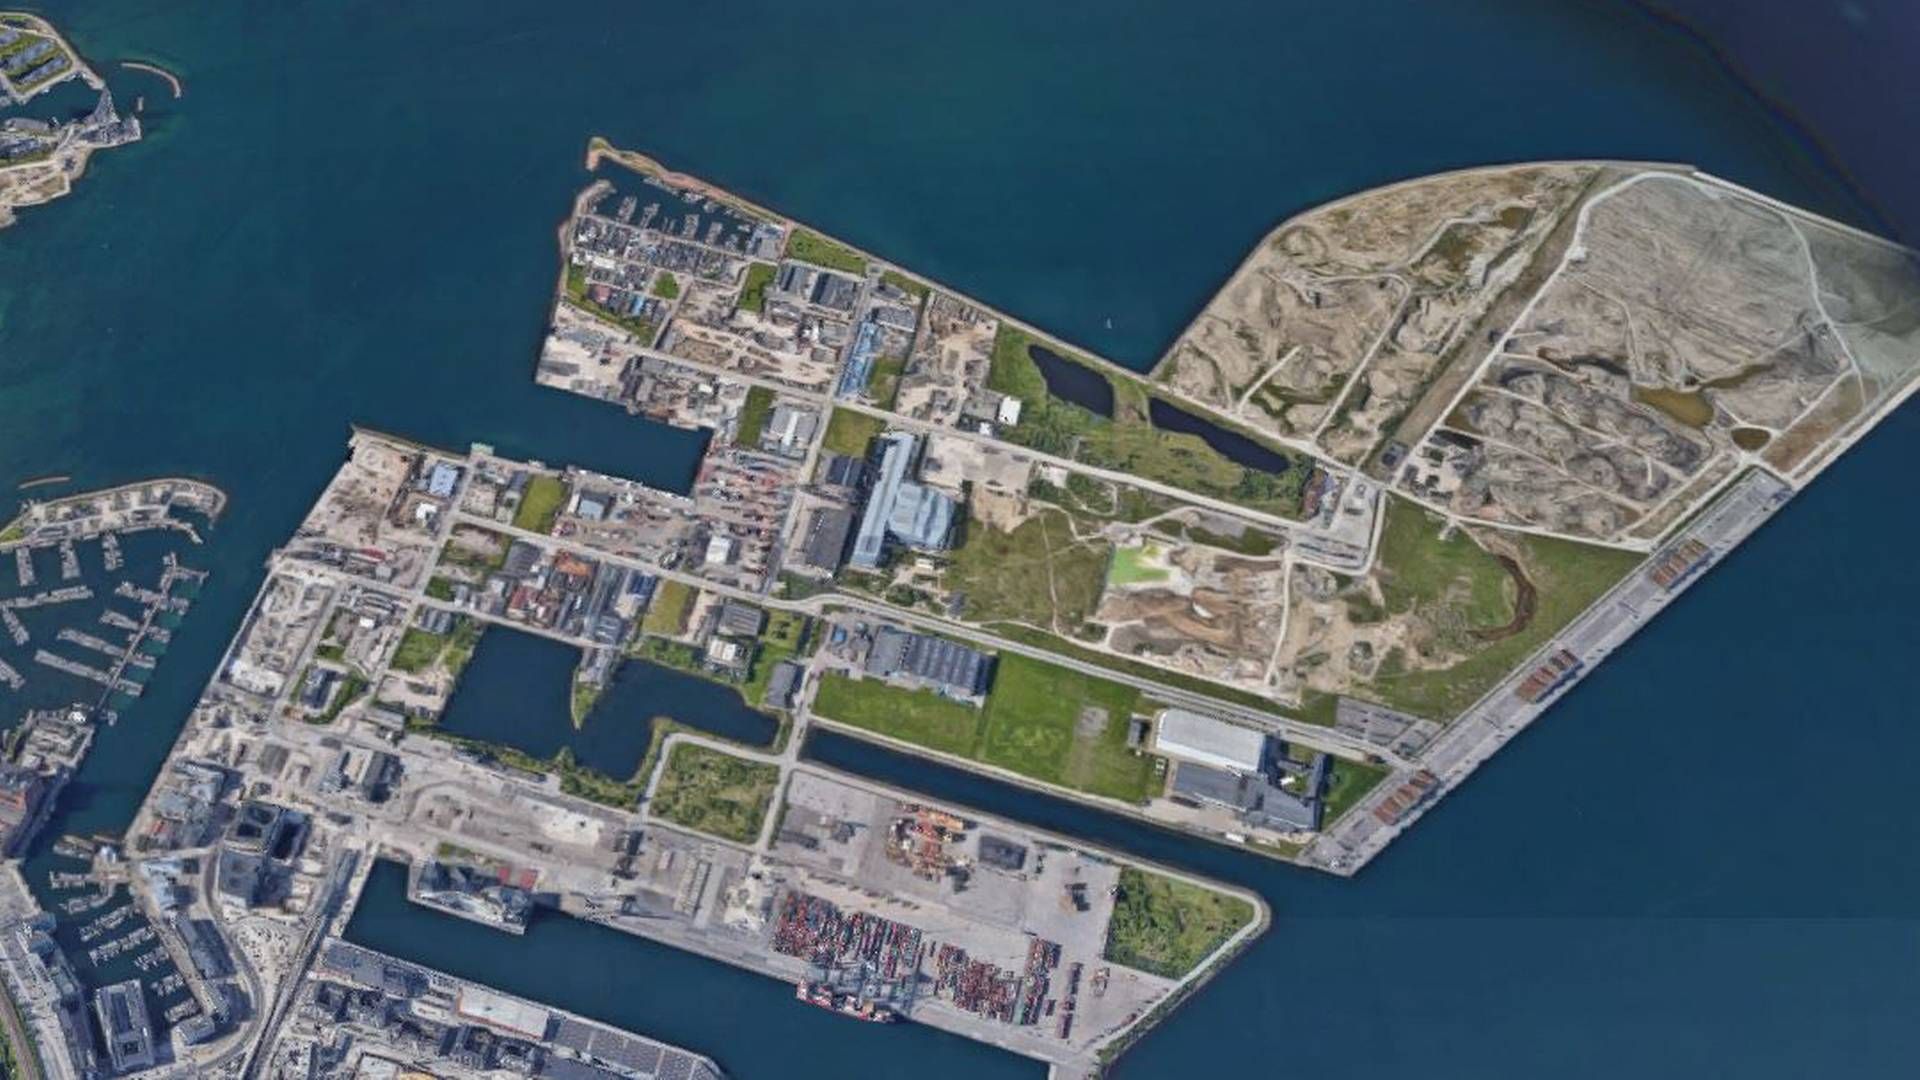 Den kommende bydel Svanemølleholm er placeret i den vestlige del af Nordhavn ind mod Svanemøllehavnen yderst til venstre i billedet. | Foto: Google Maps